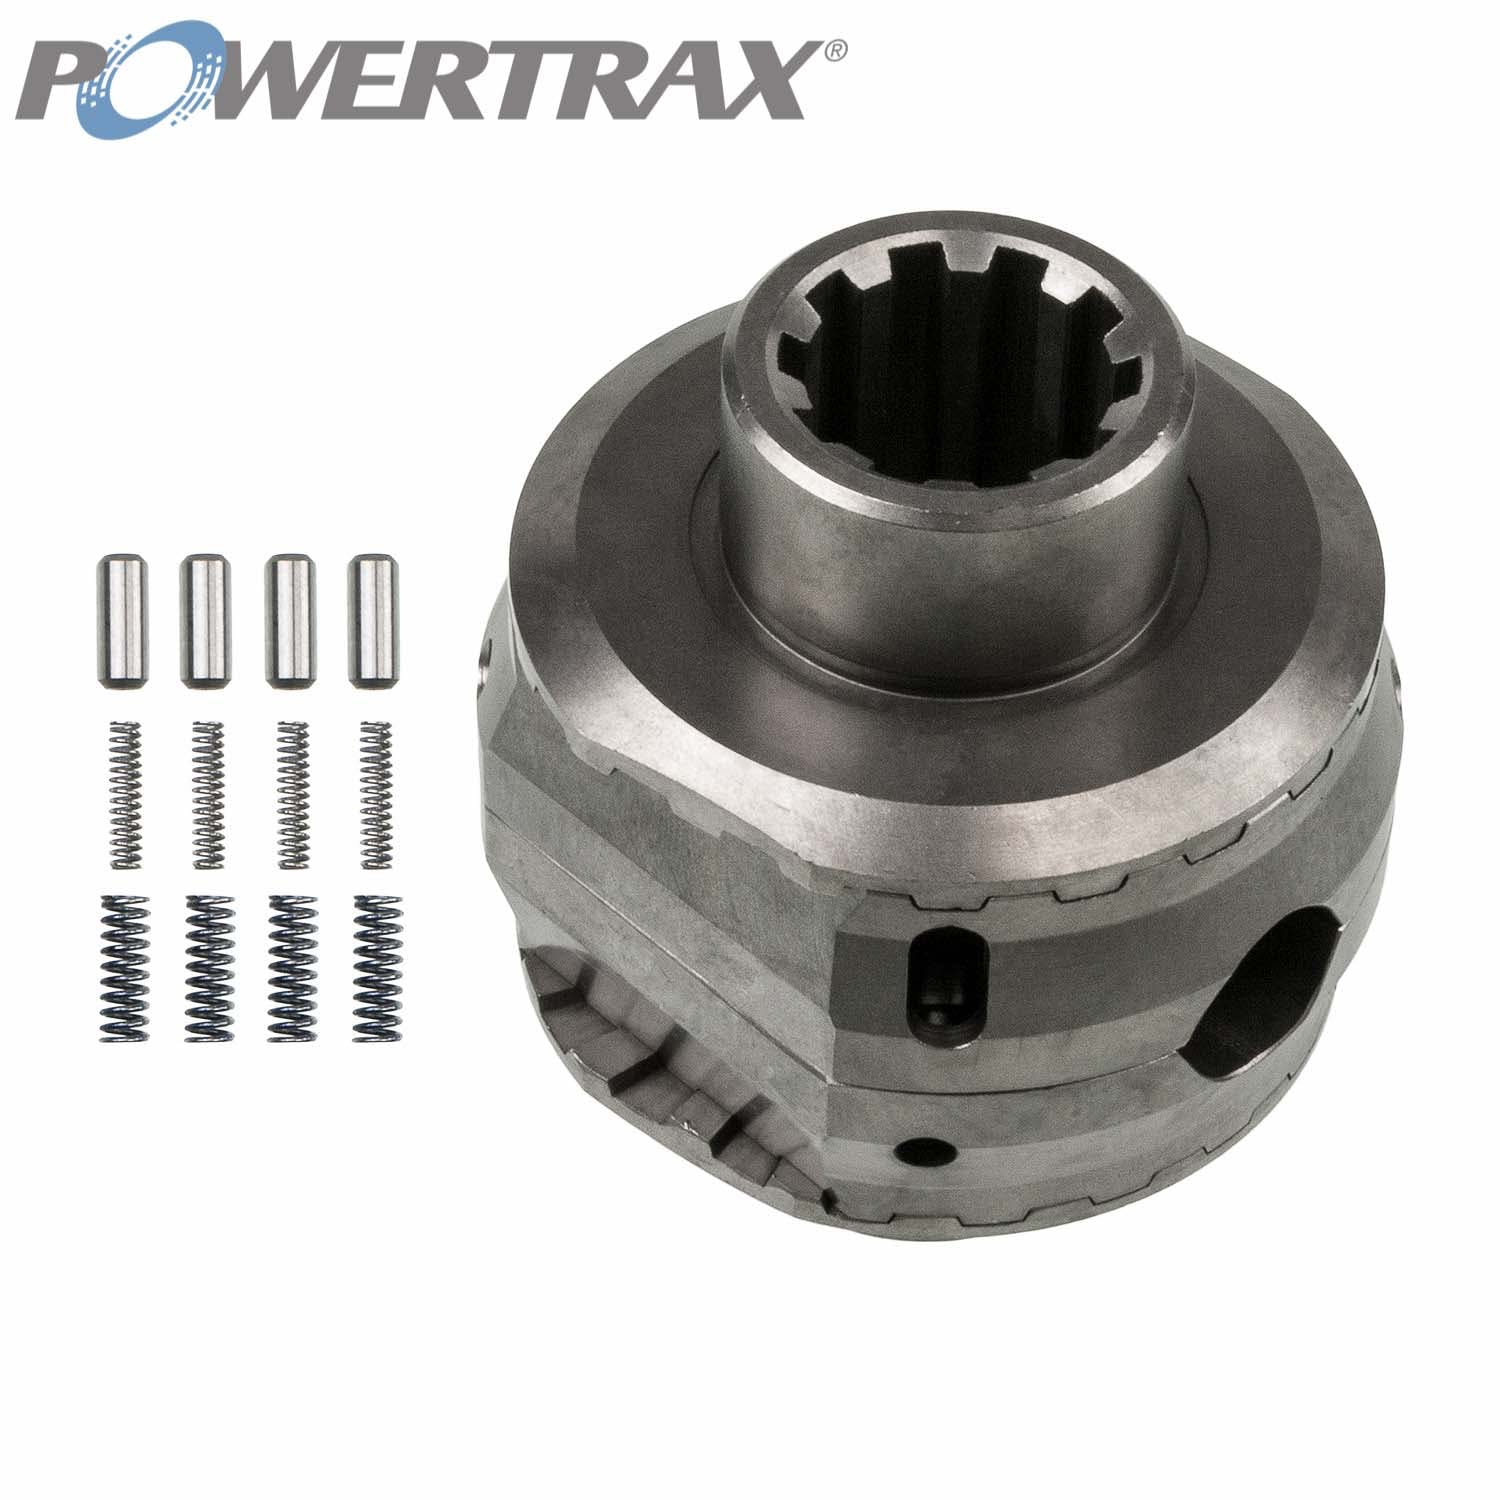 PowerTrax 2115-LR Lock Right Locker